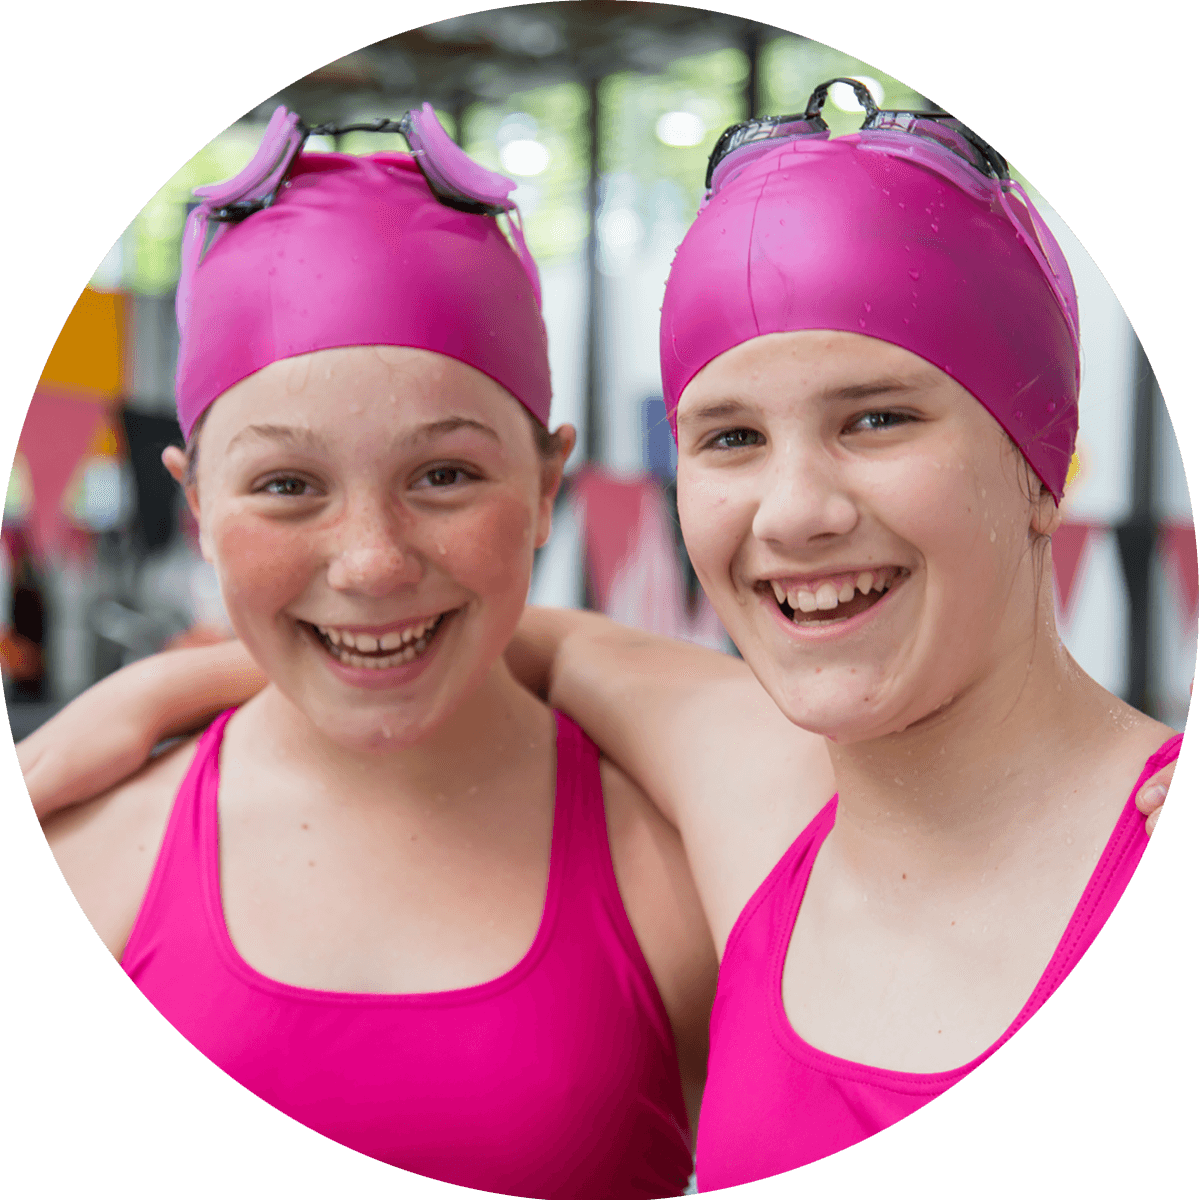 Two girls in pink swimwear